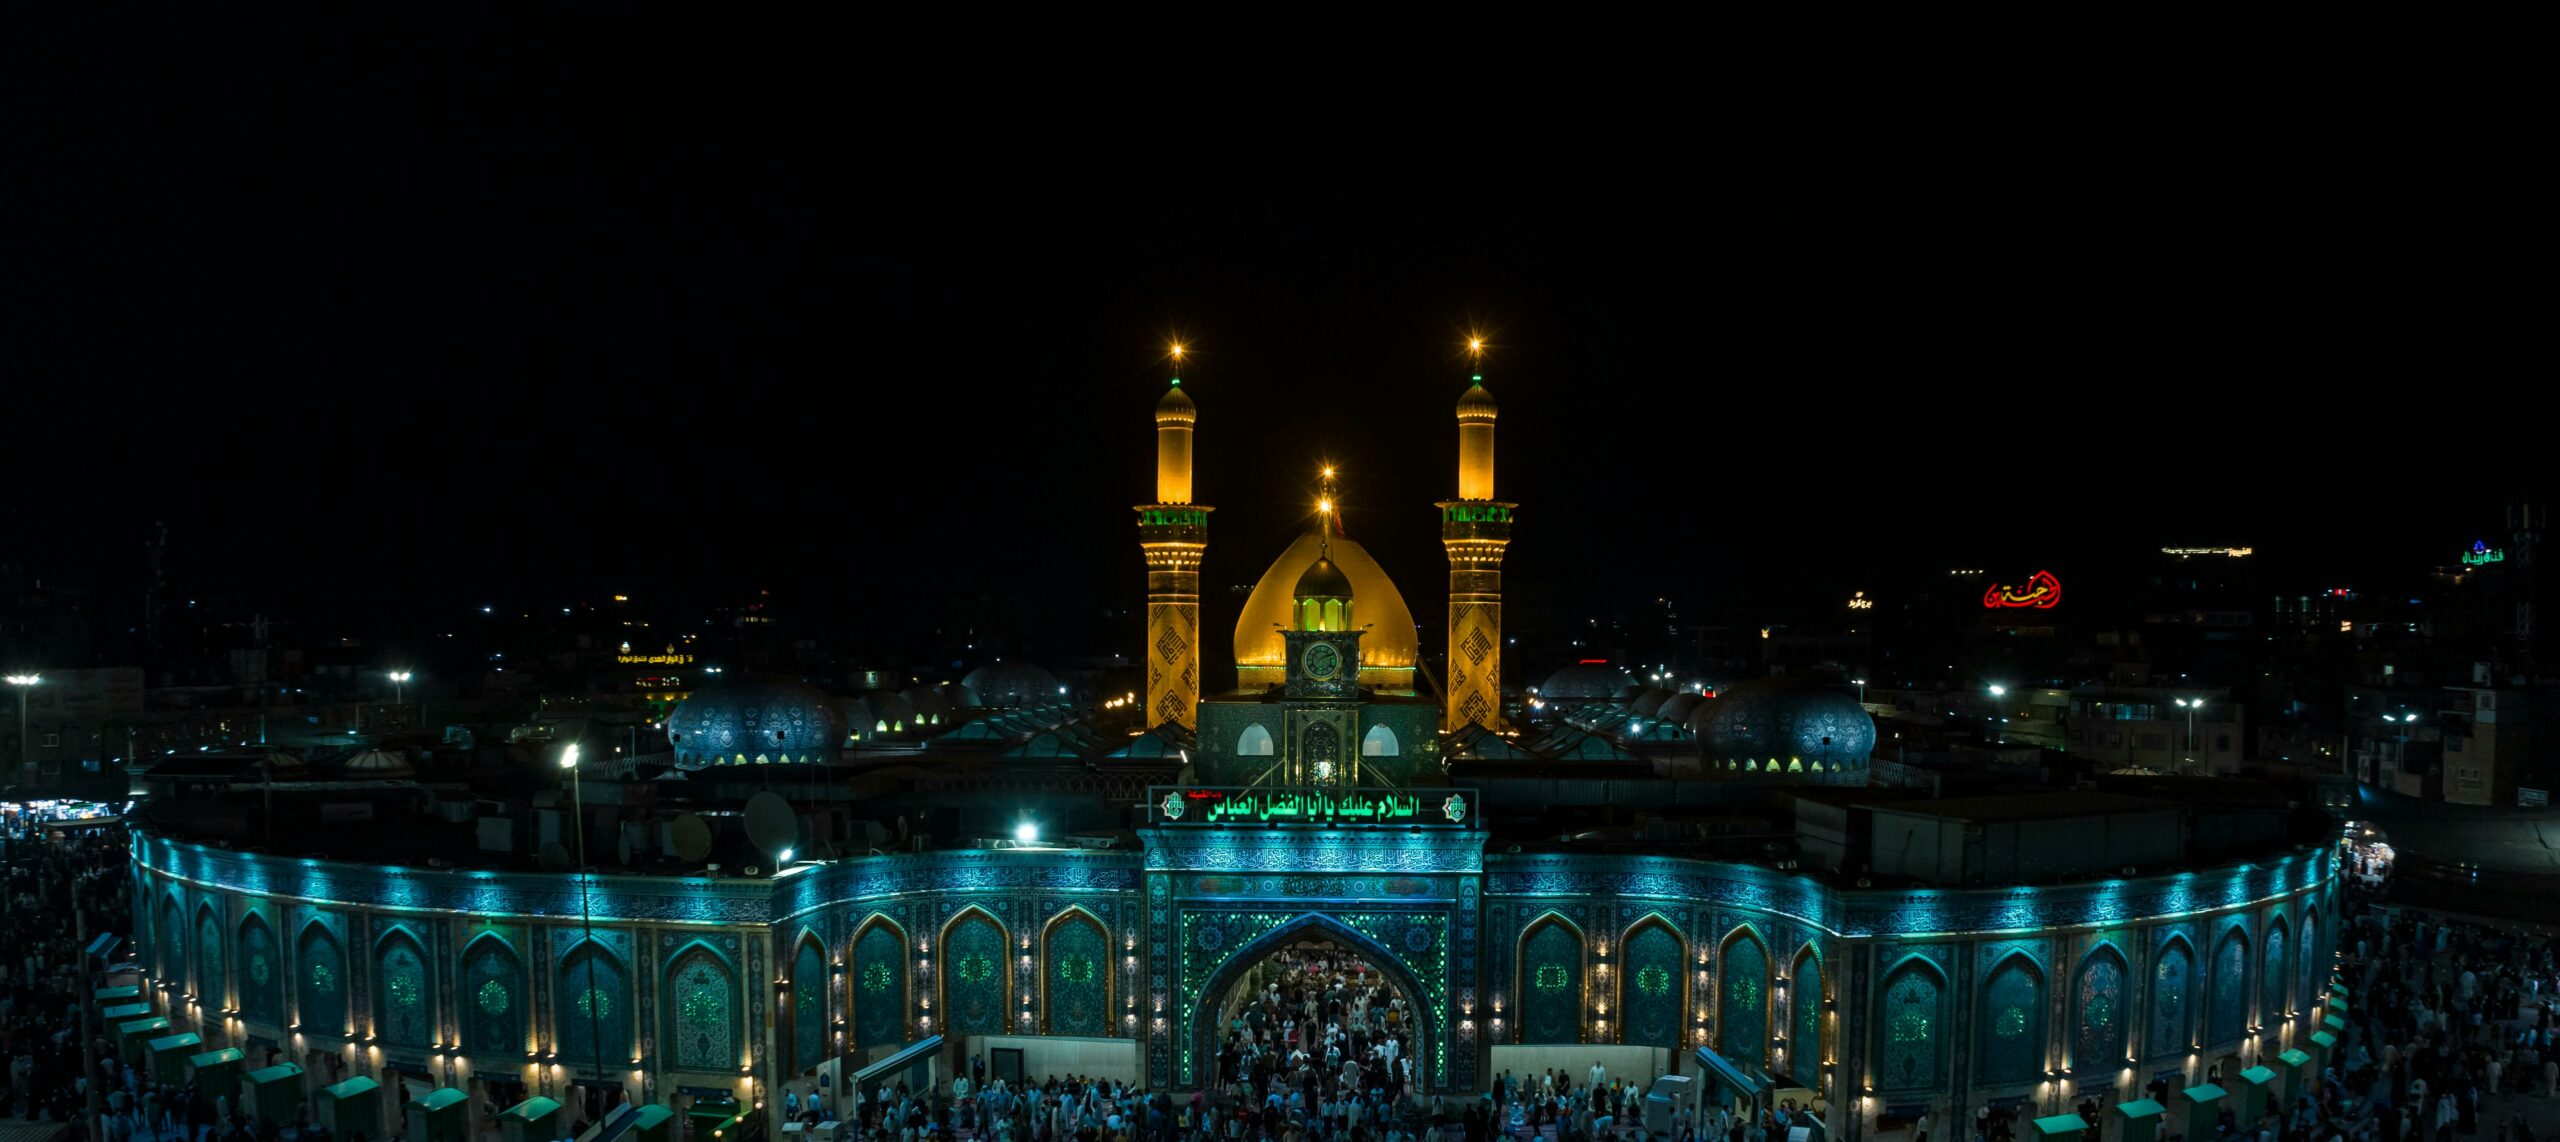 Holy Shrine of Imam Hossain